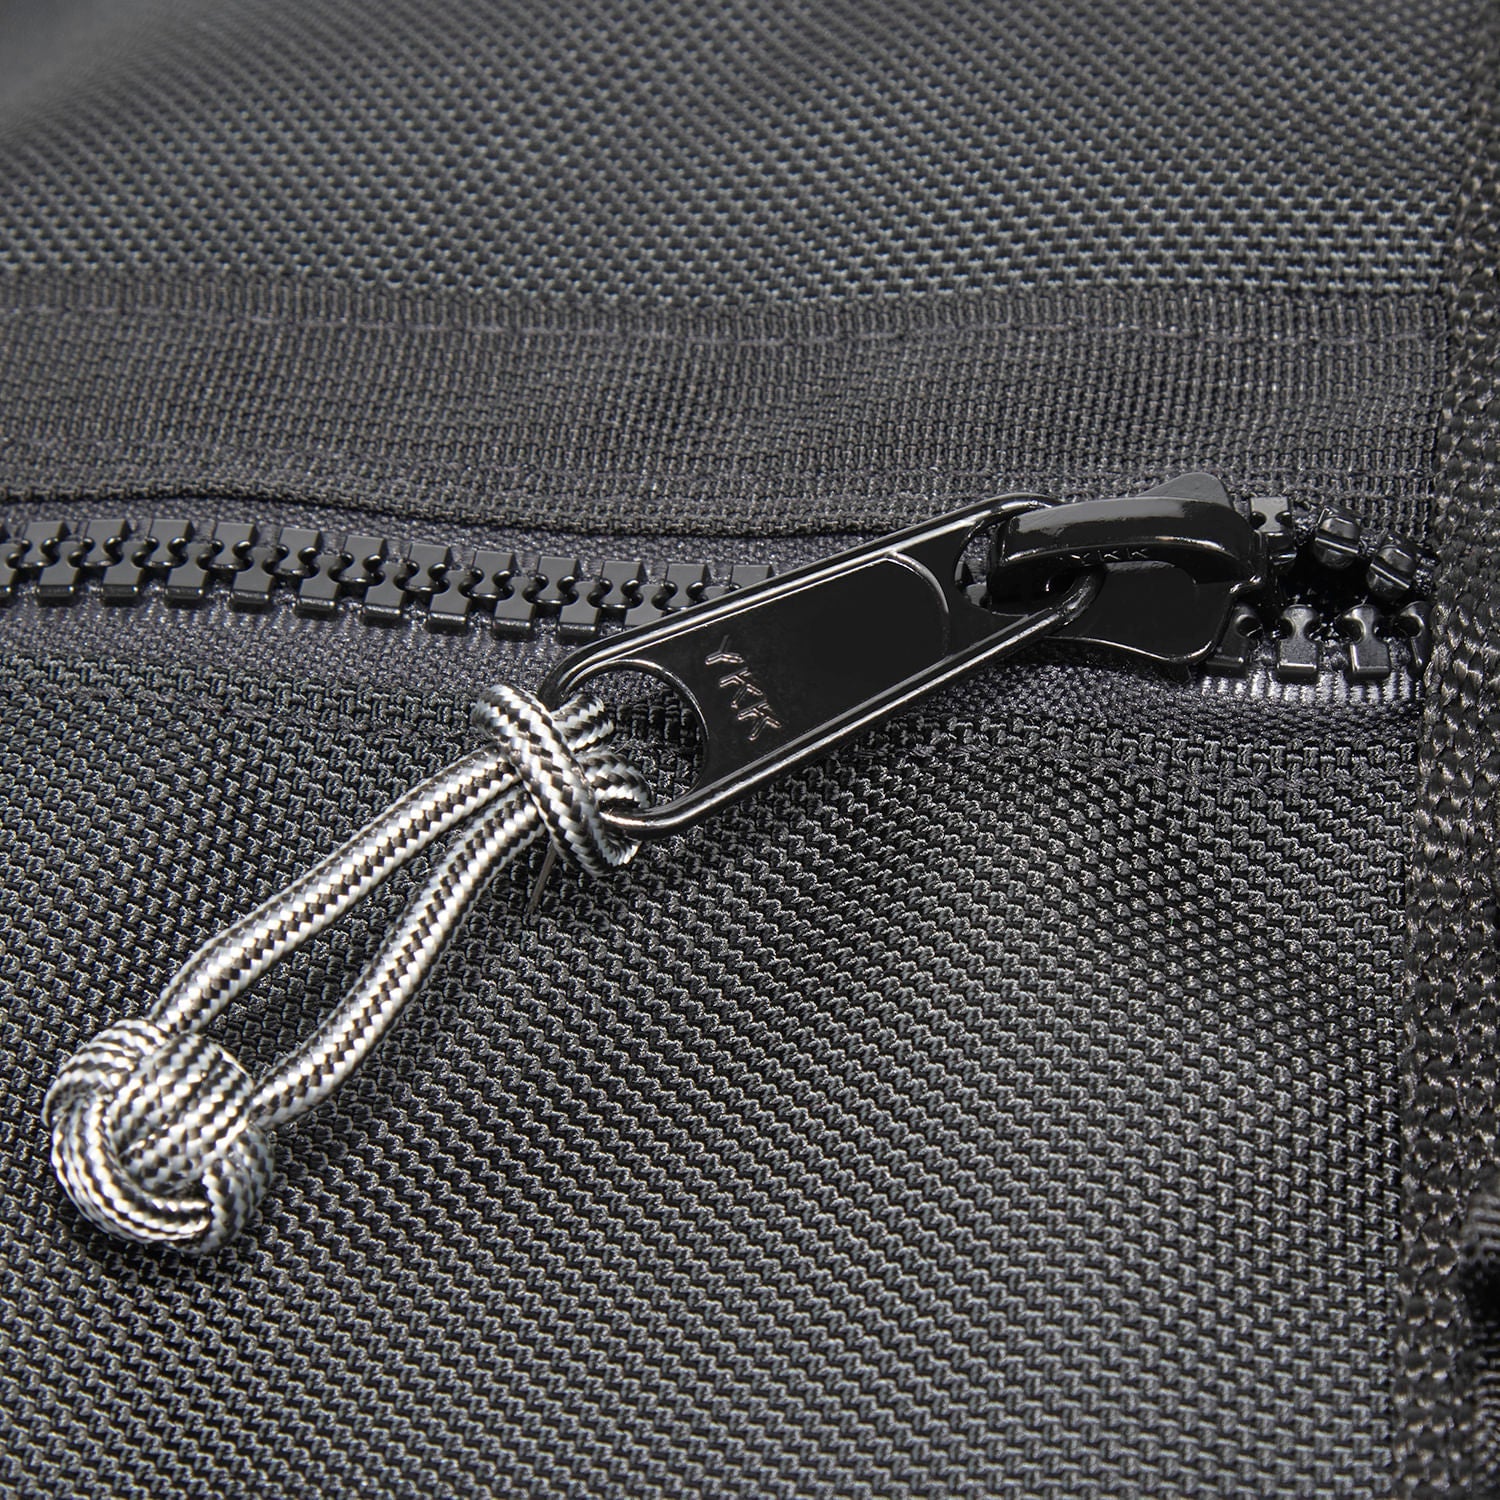 Zipper slider close up with Zip Knot. 